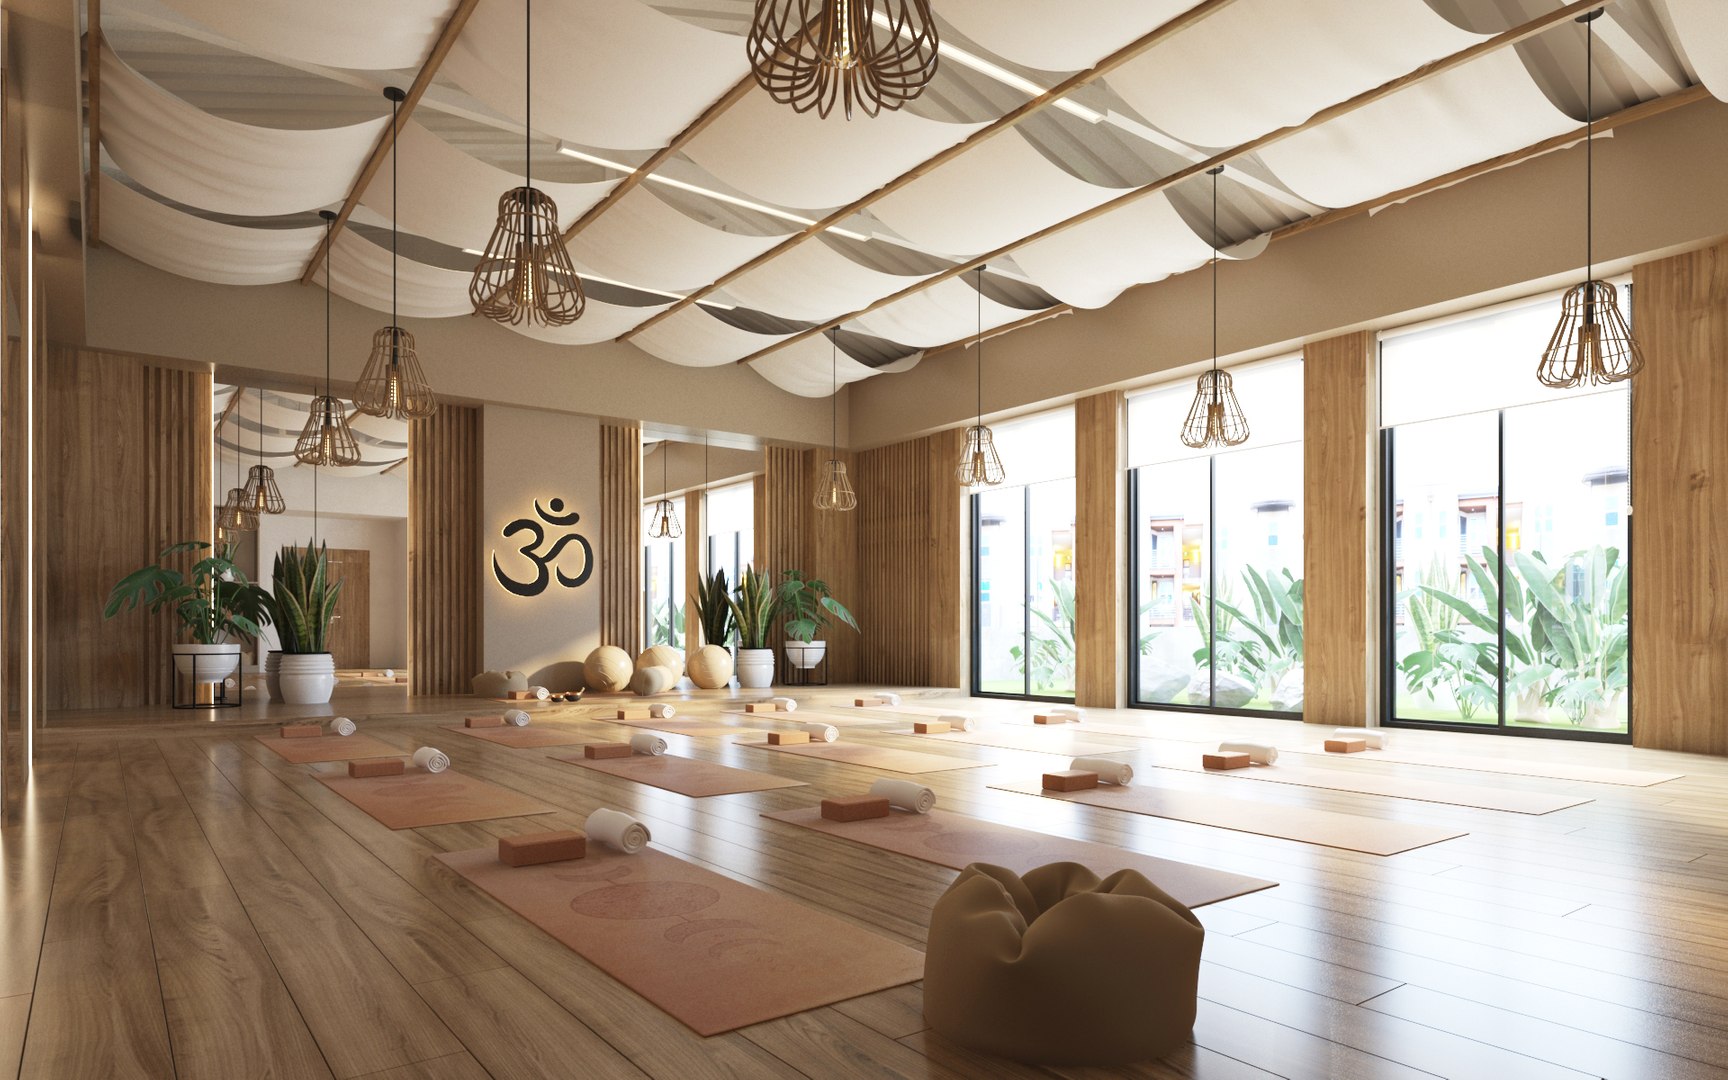 Yoga Studio Interior 3D model - TurboSquid 1810814